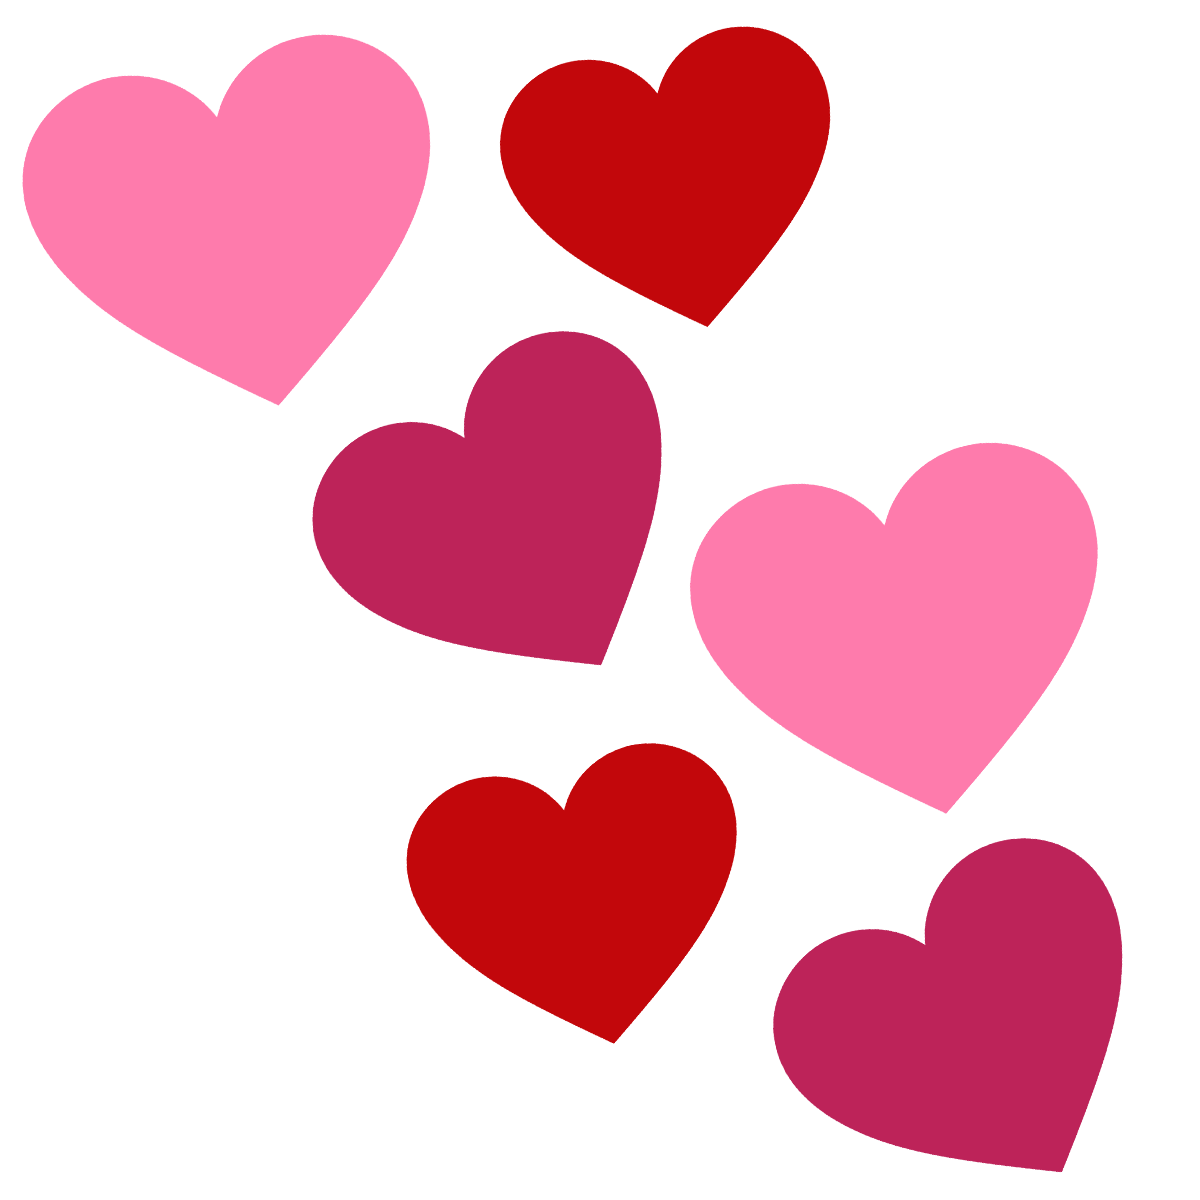 Hearts heart clip art heart i - Clip Art Of Hearts